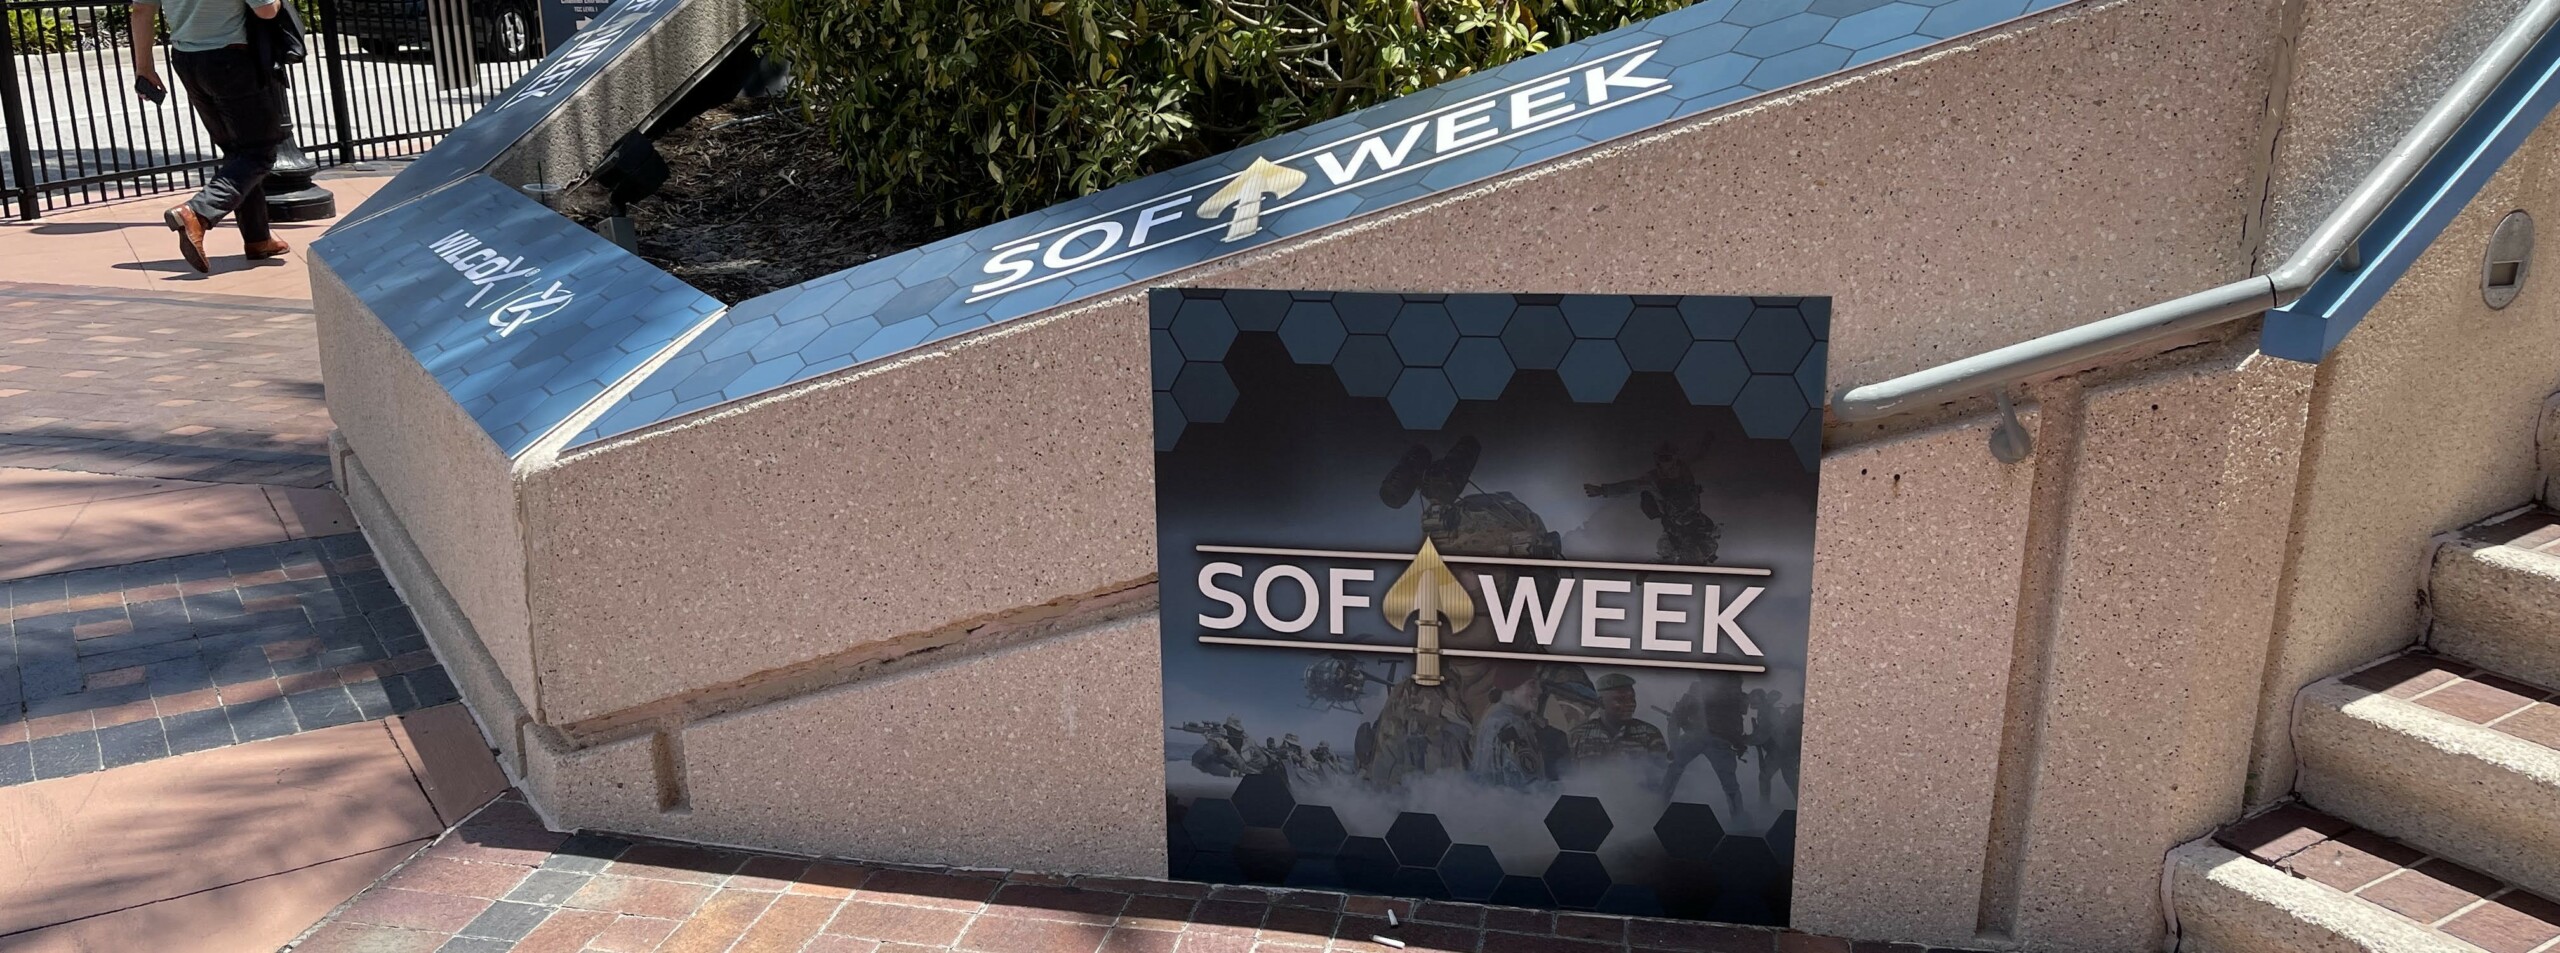 SOF Week Signage